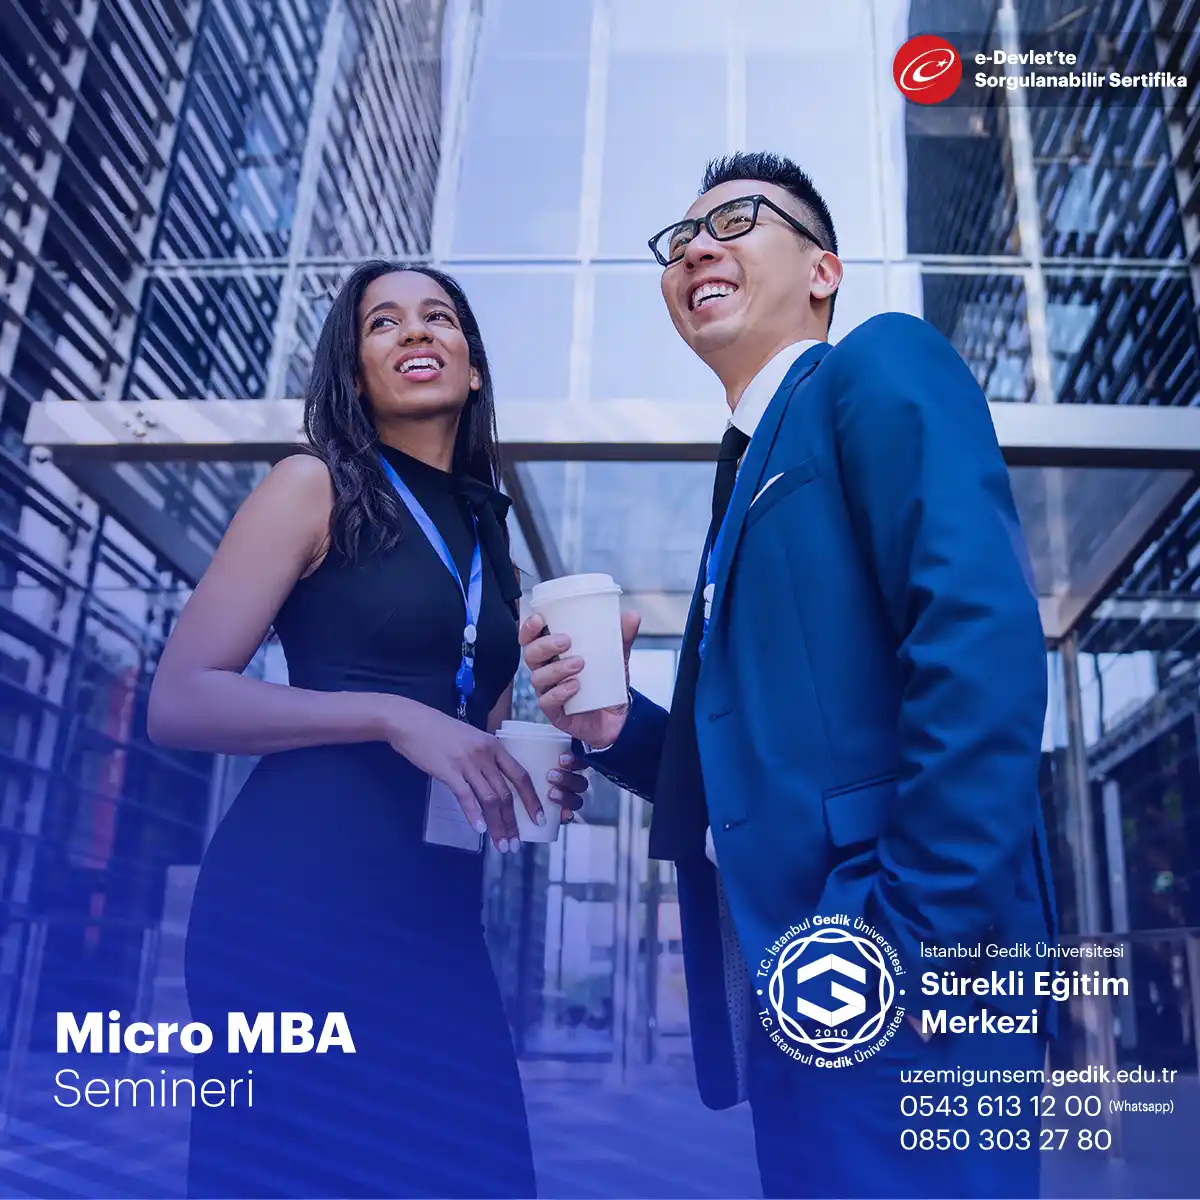 Micro MBA Seminer Programı